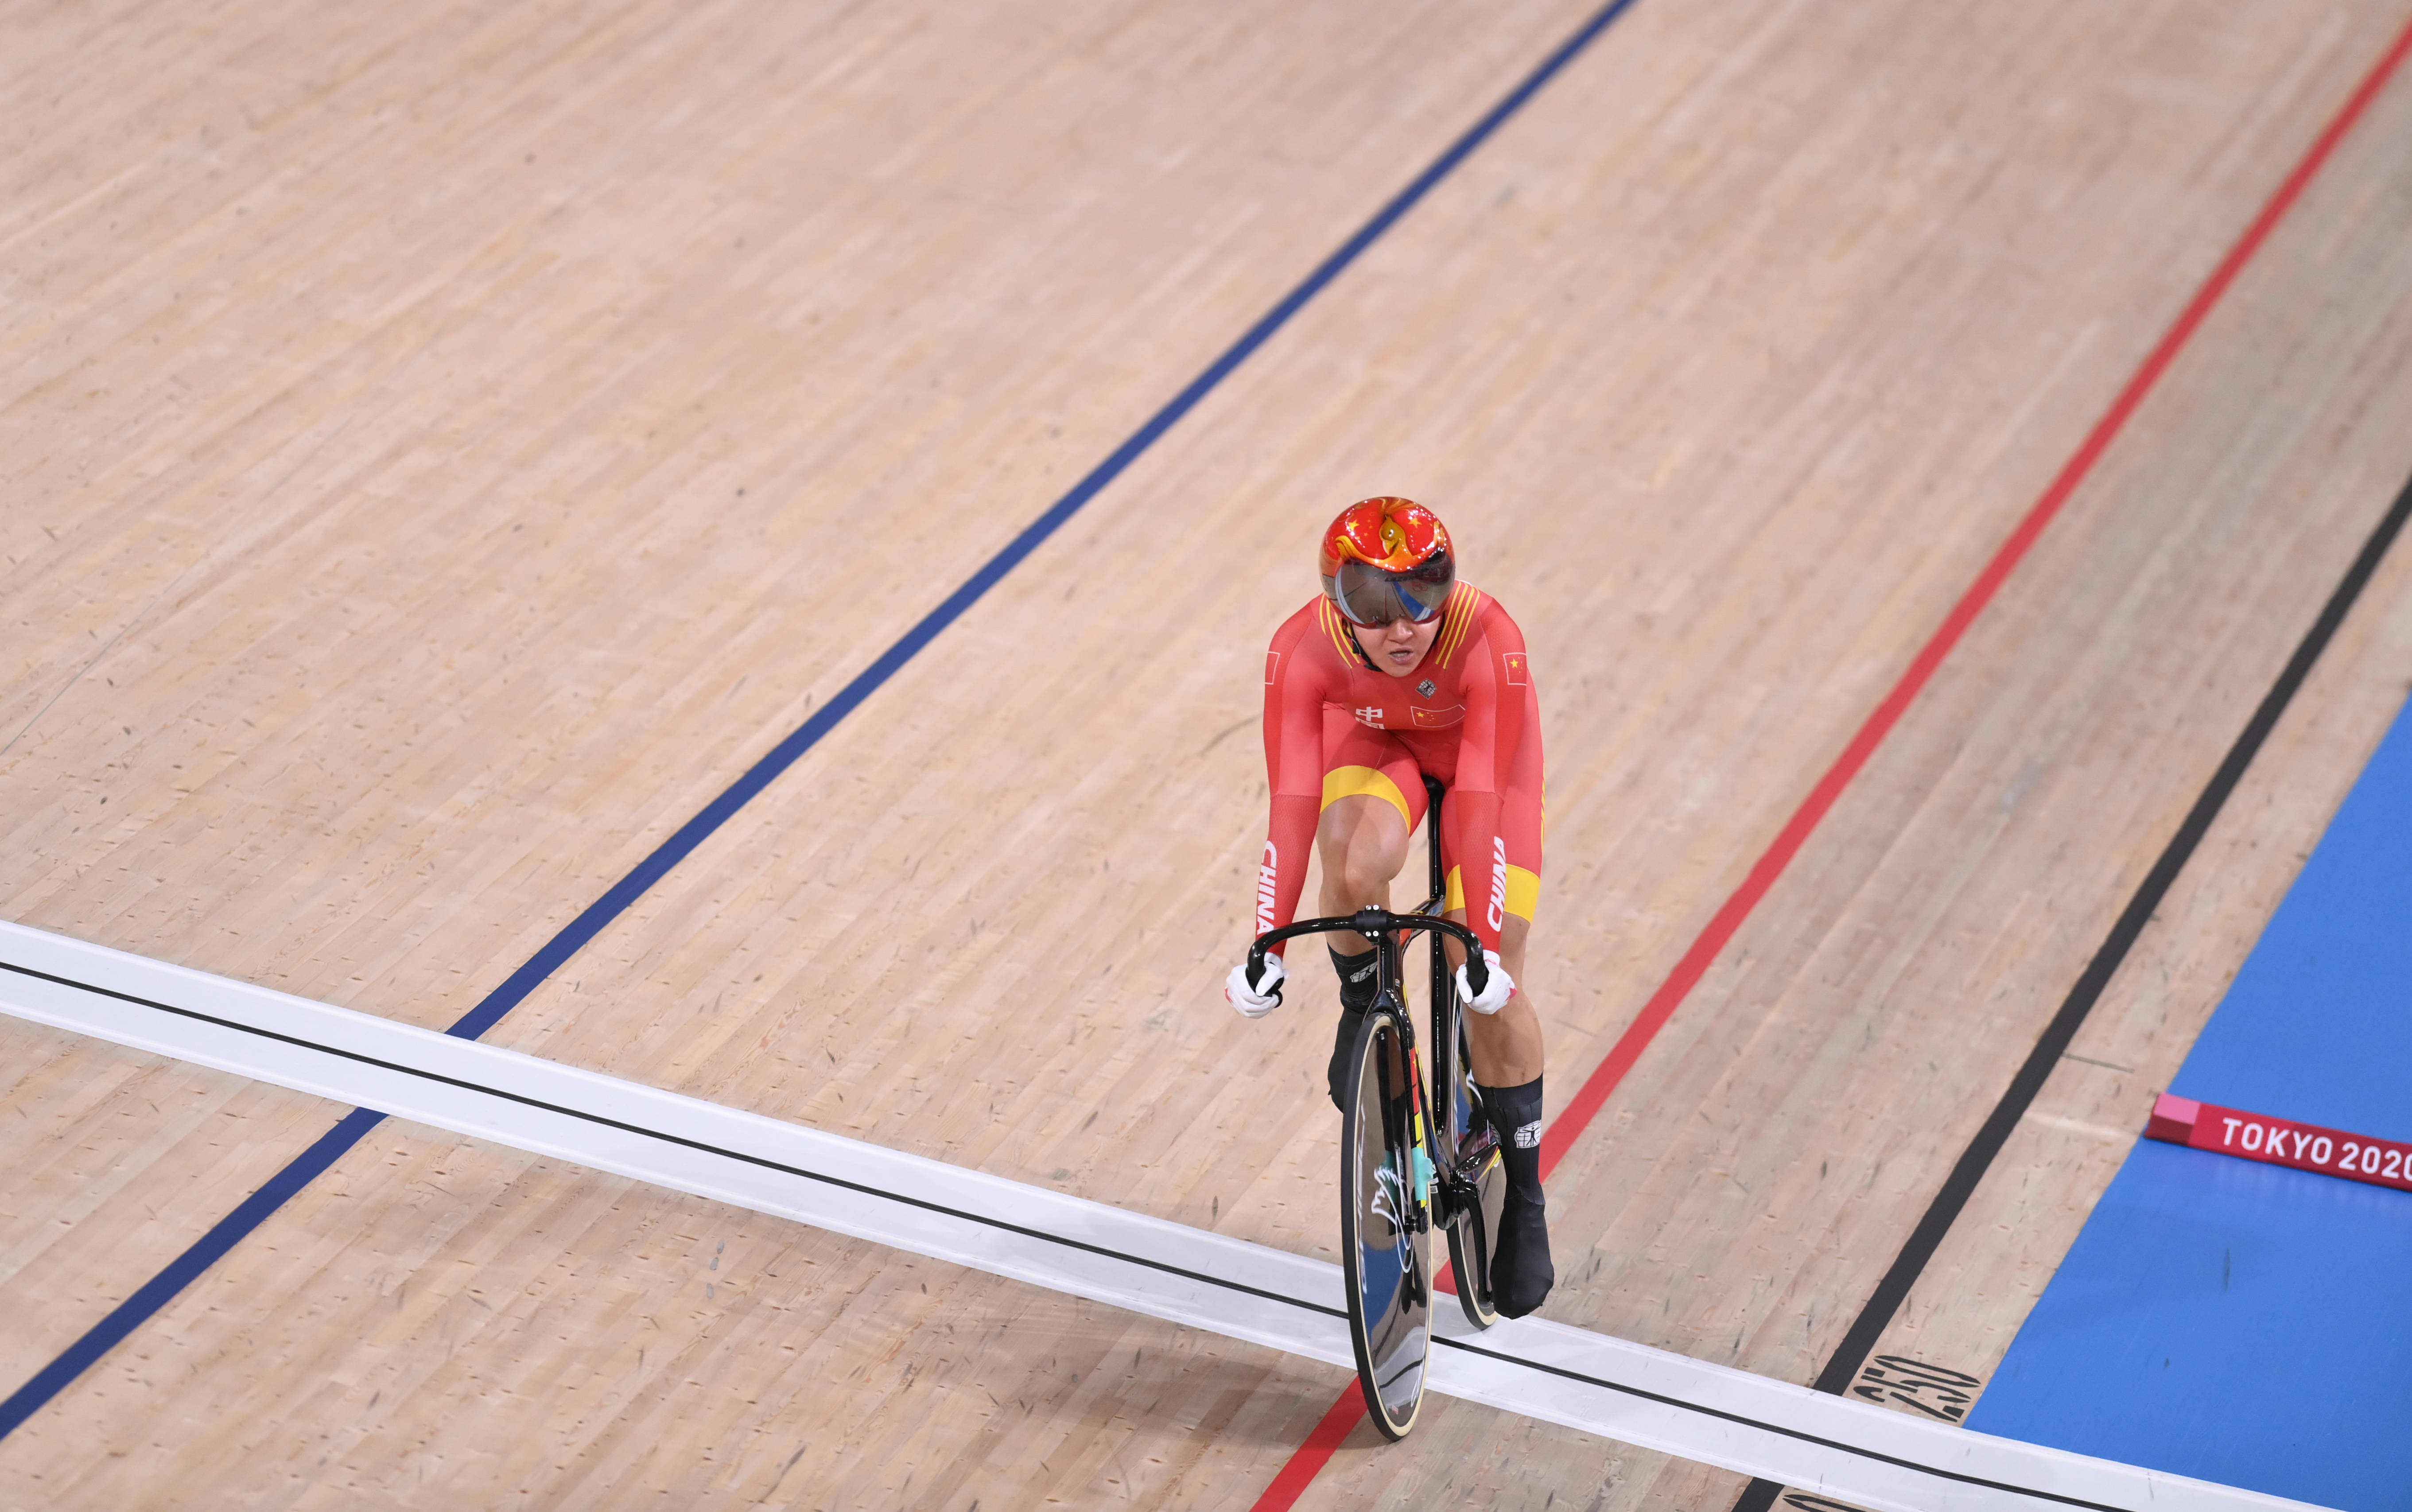 新华社记者张宏祥摄当日,在东京奥运会场地自行车女子团体竞速赛中